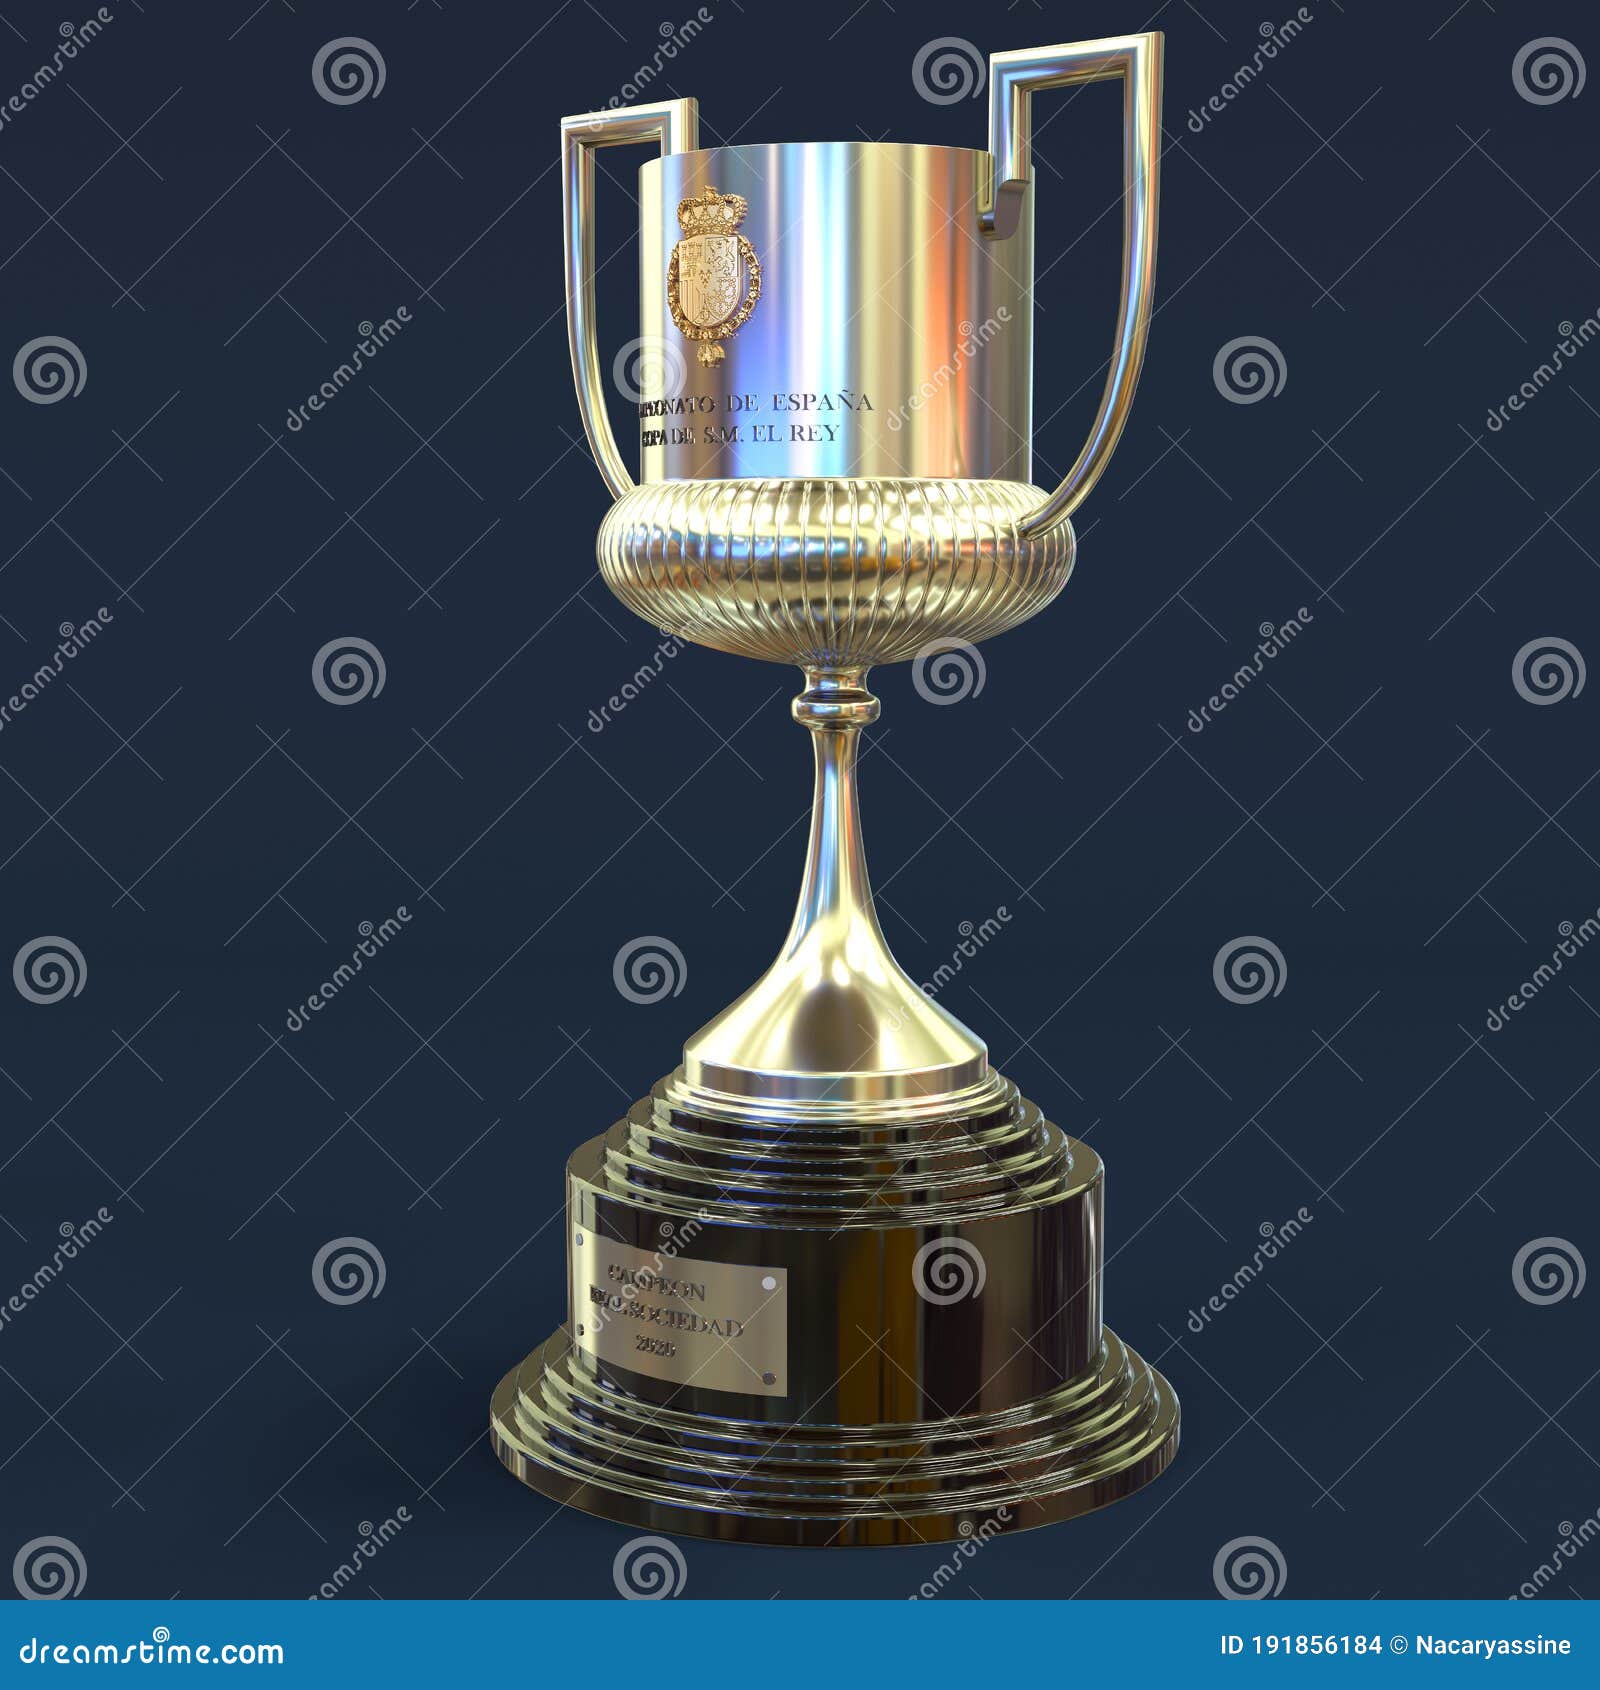 copa del rey spain, king cup spain, 3d model rendering